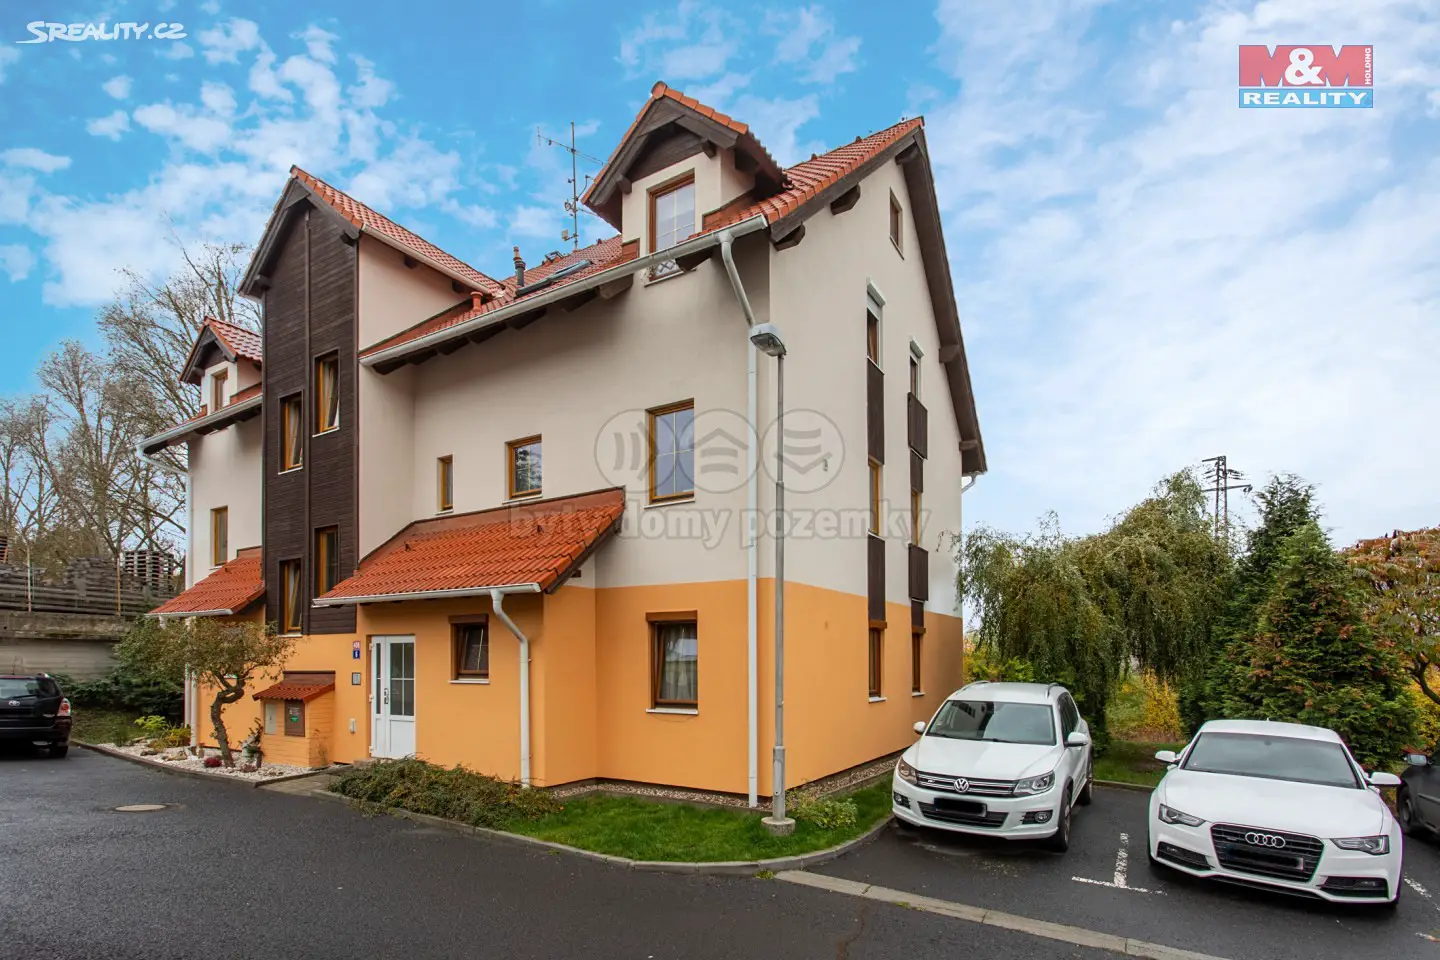 Prodej bytu 2+kk 45 m², Boční, Karlovy Vary - Bohatice